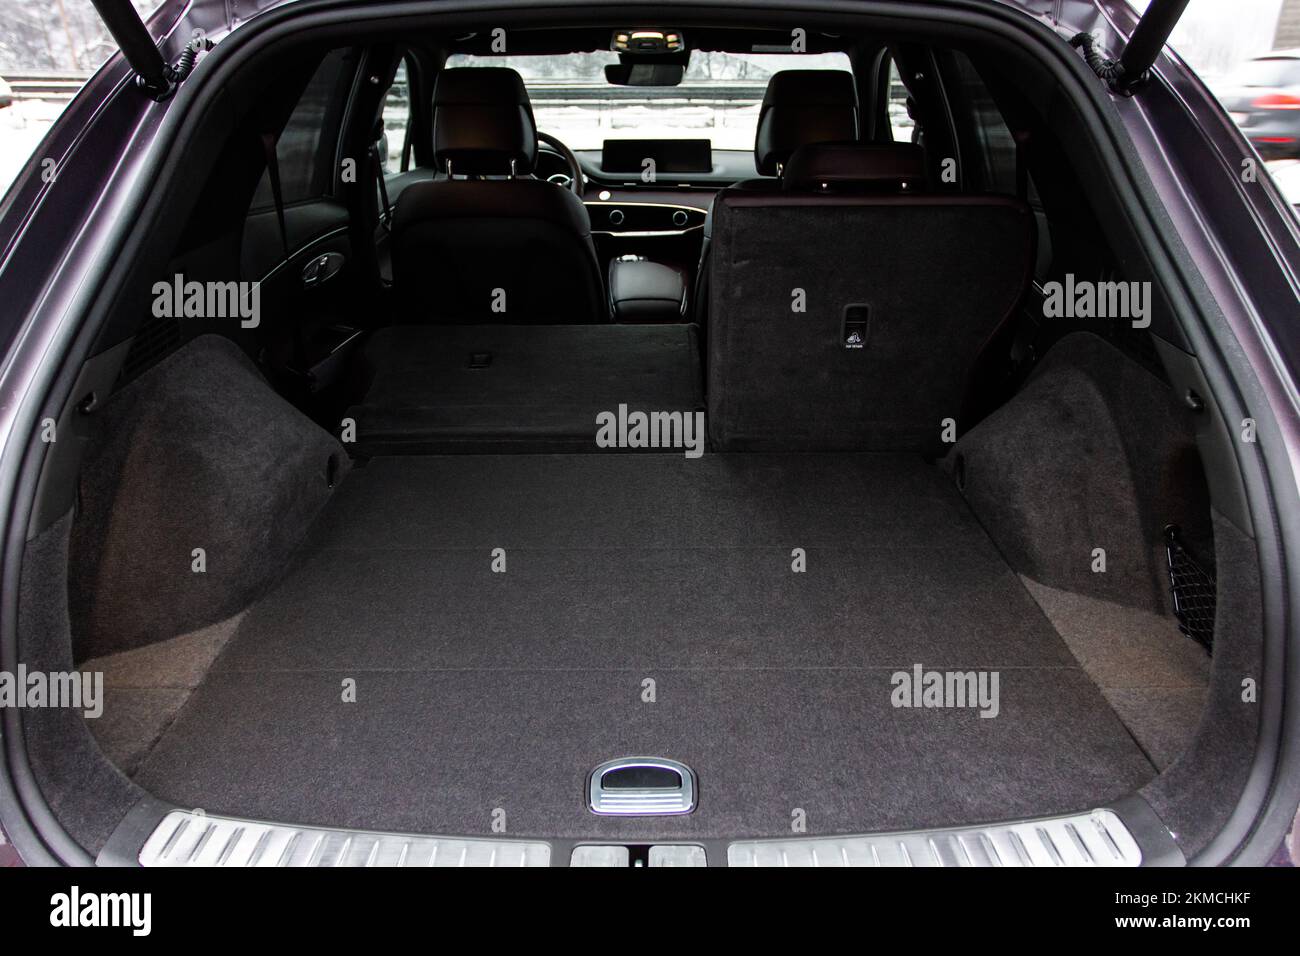 Riesiger, sauberer und leerer Kofferraum im Innenraum eines kompakten suv. Rückansicht eines SUV-Fahrzeugs mit offenem Kofferraum Stockfoto